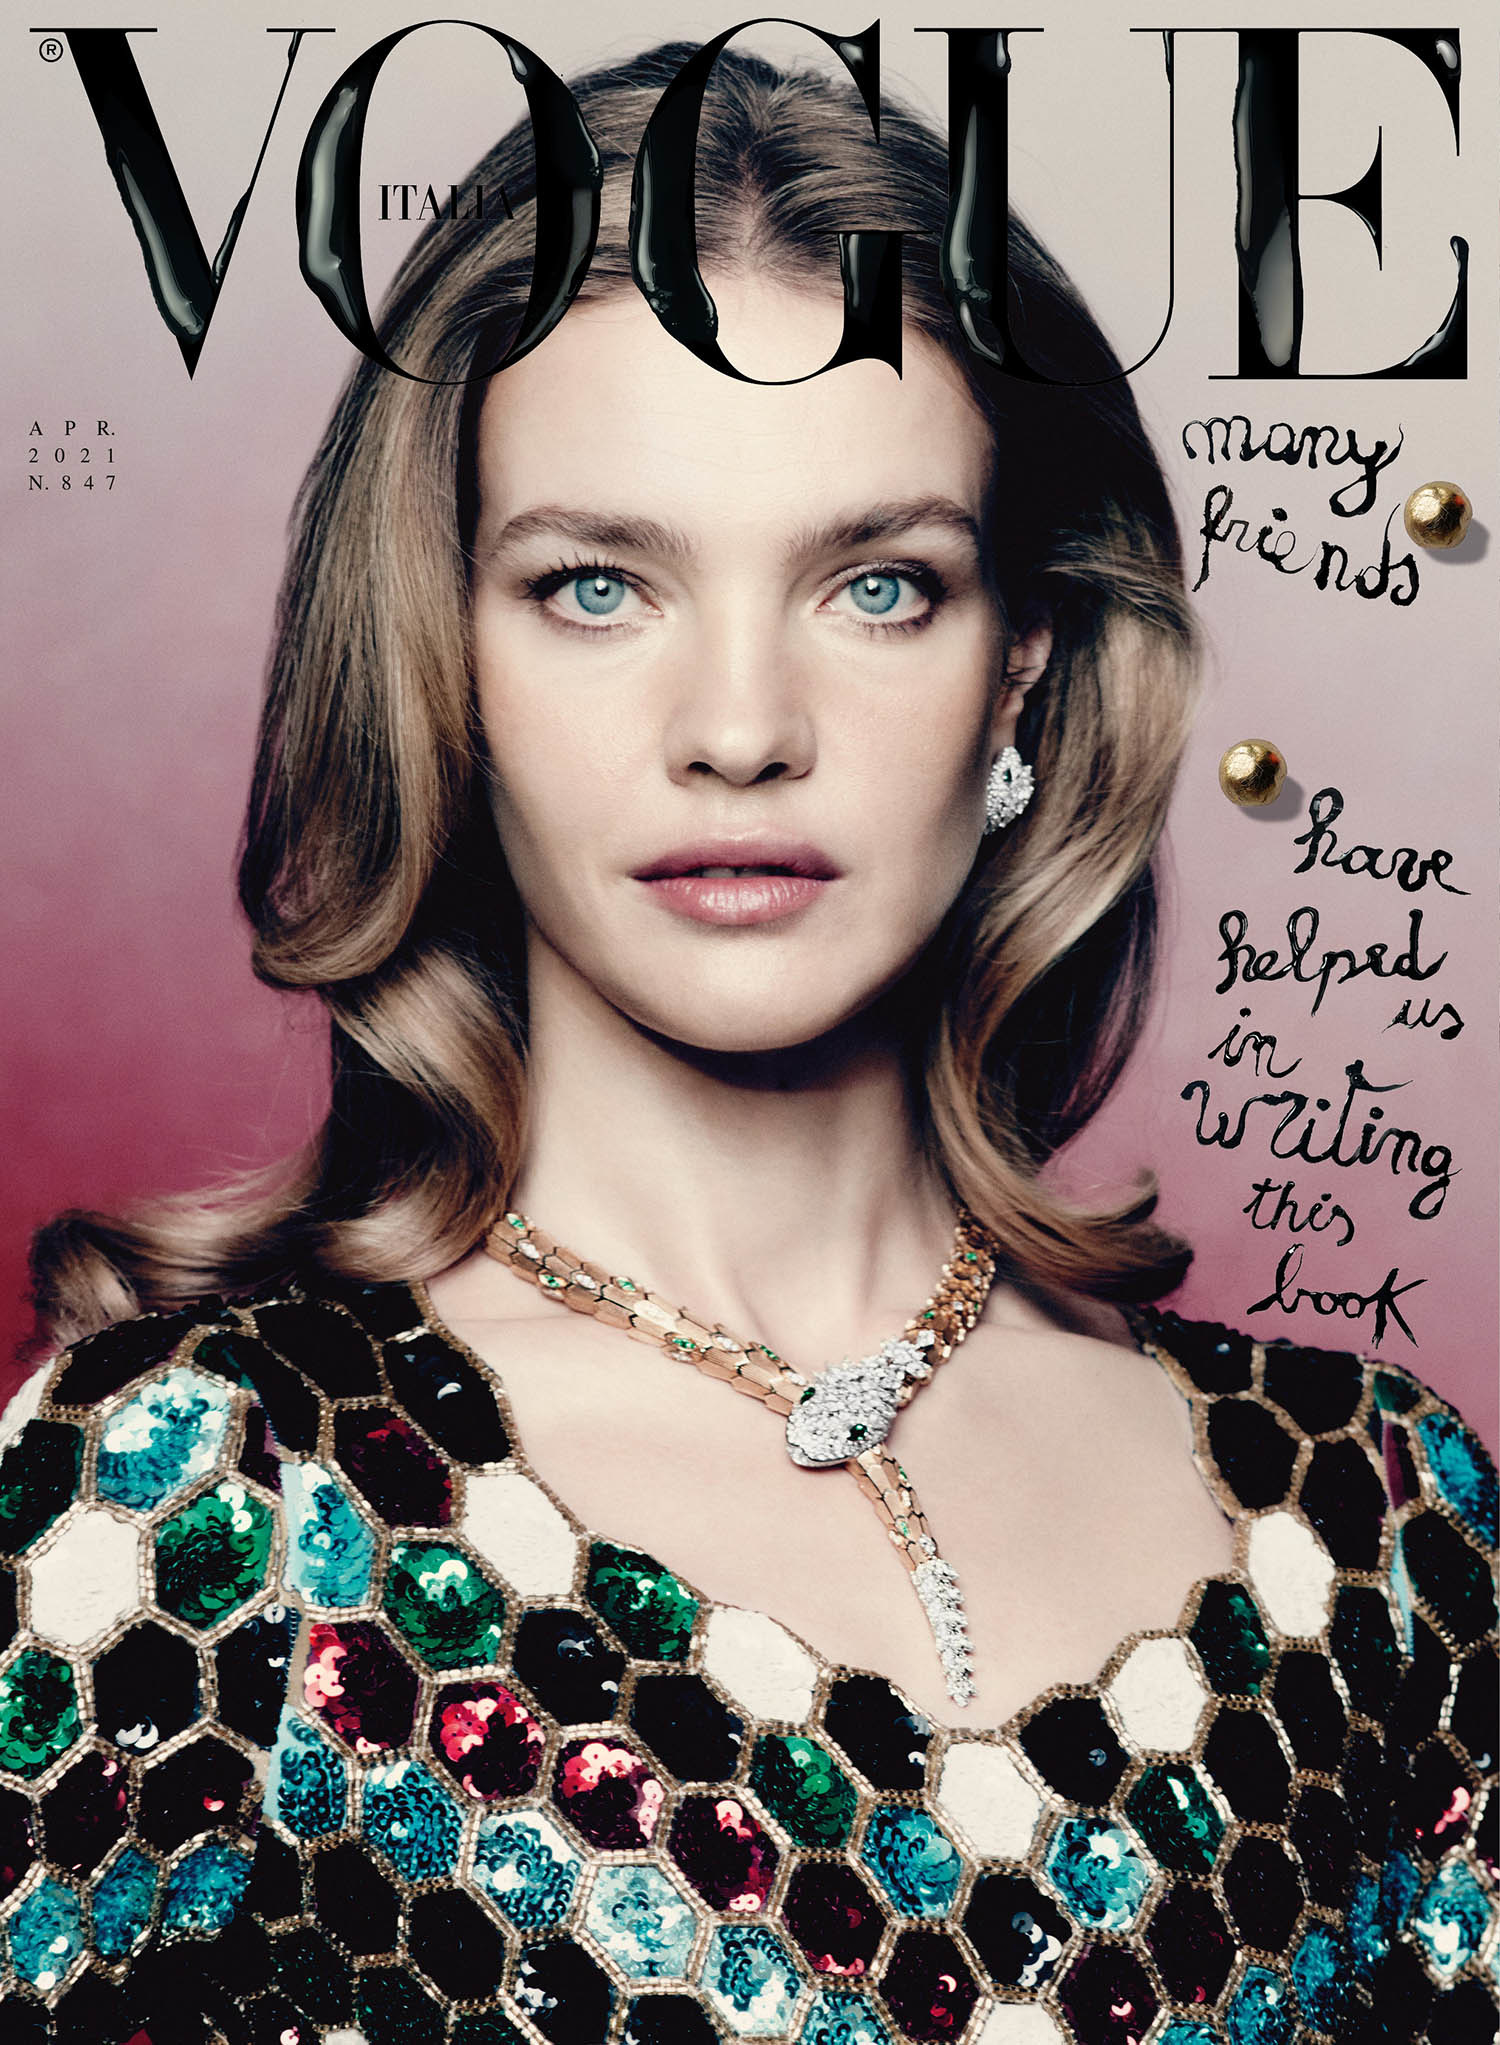 Vogue Italia April 2021 Cover Story Editorial